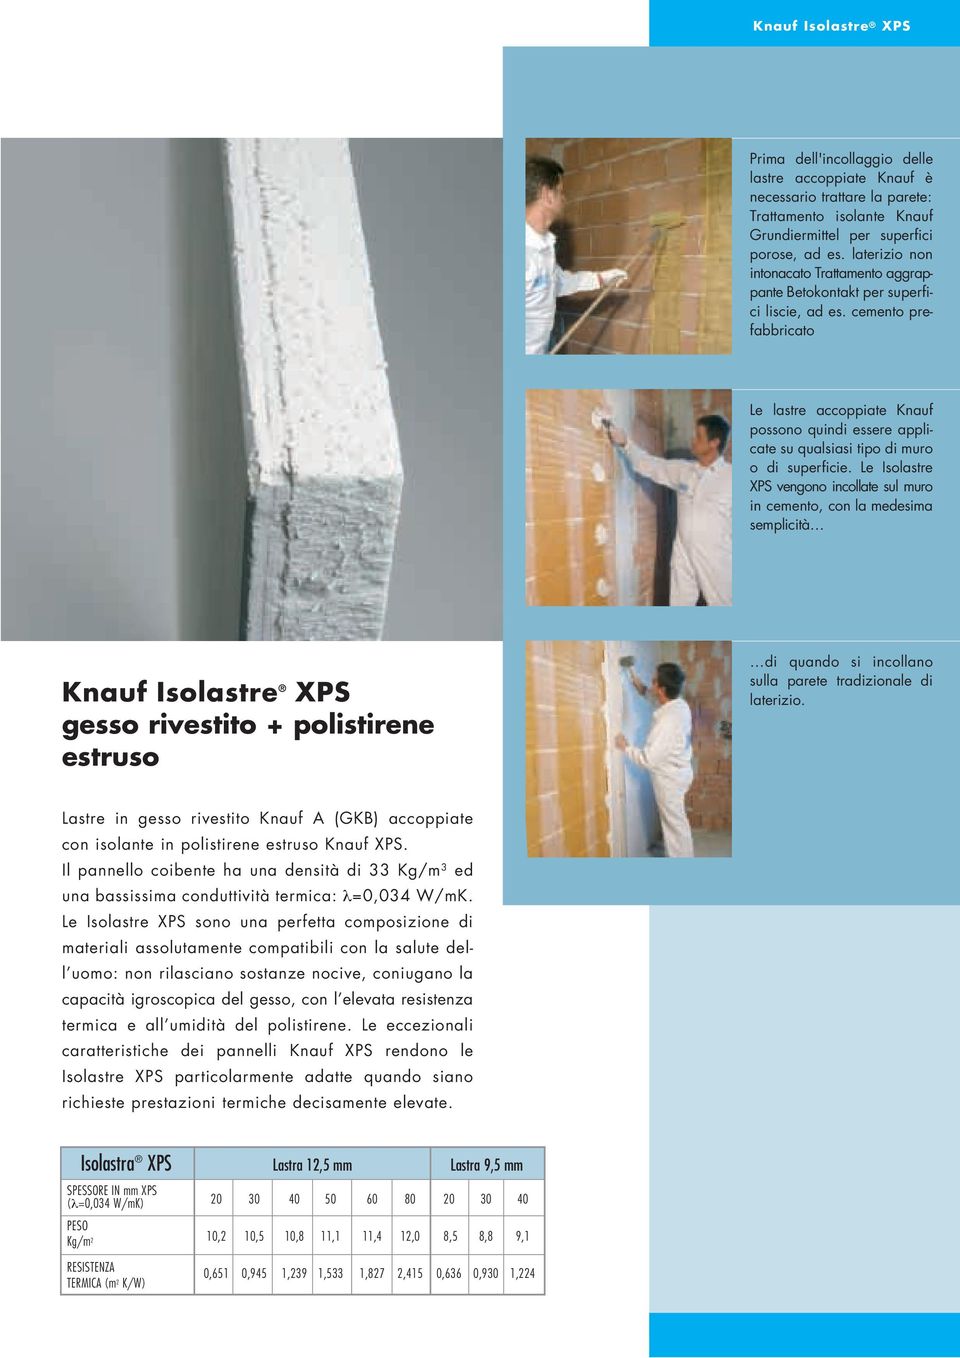 cemento prefabbricato Le lastre accoppiate Knauf possono quindi essere applicate su qualsiasi tipo di muro o di superficie.